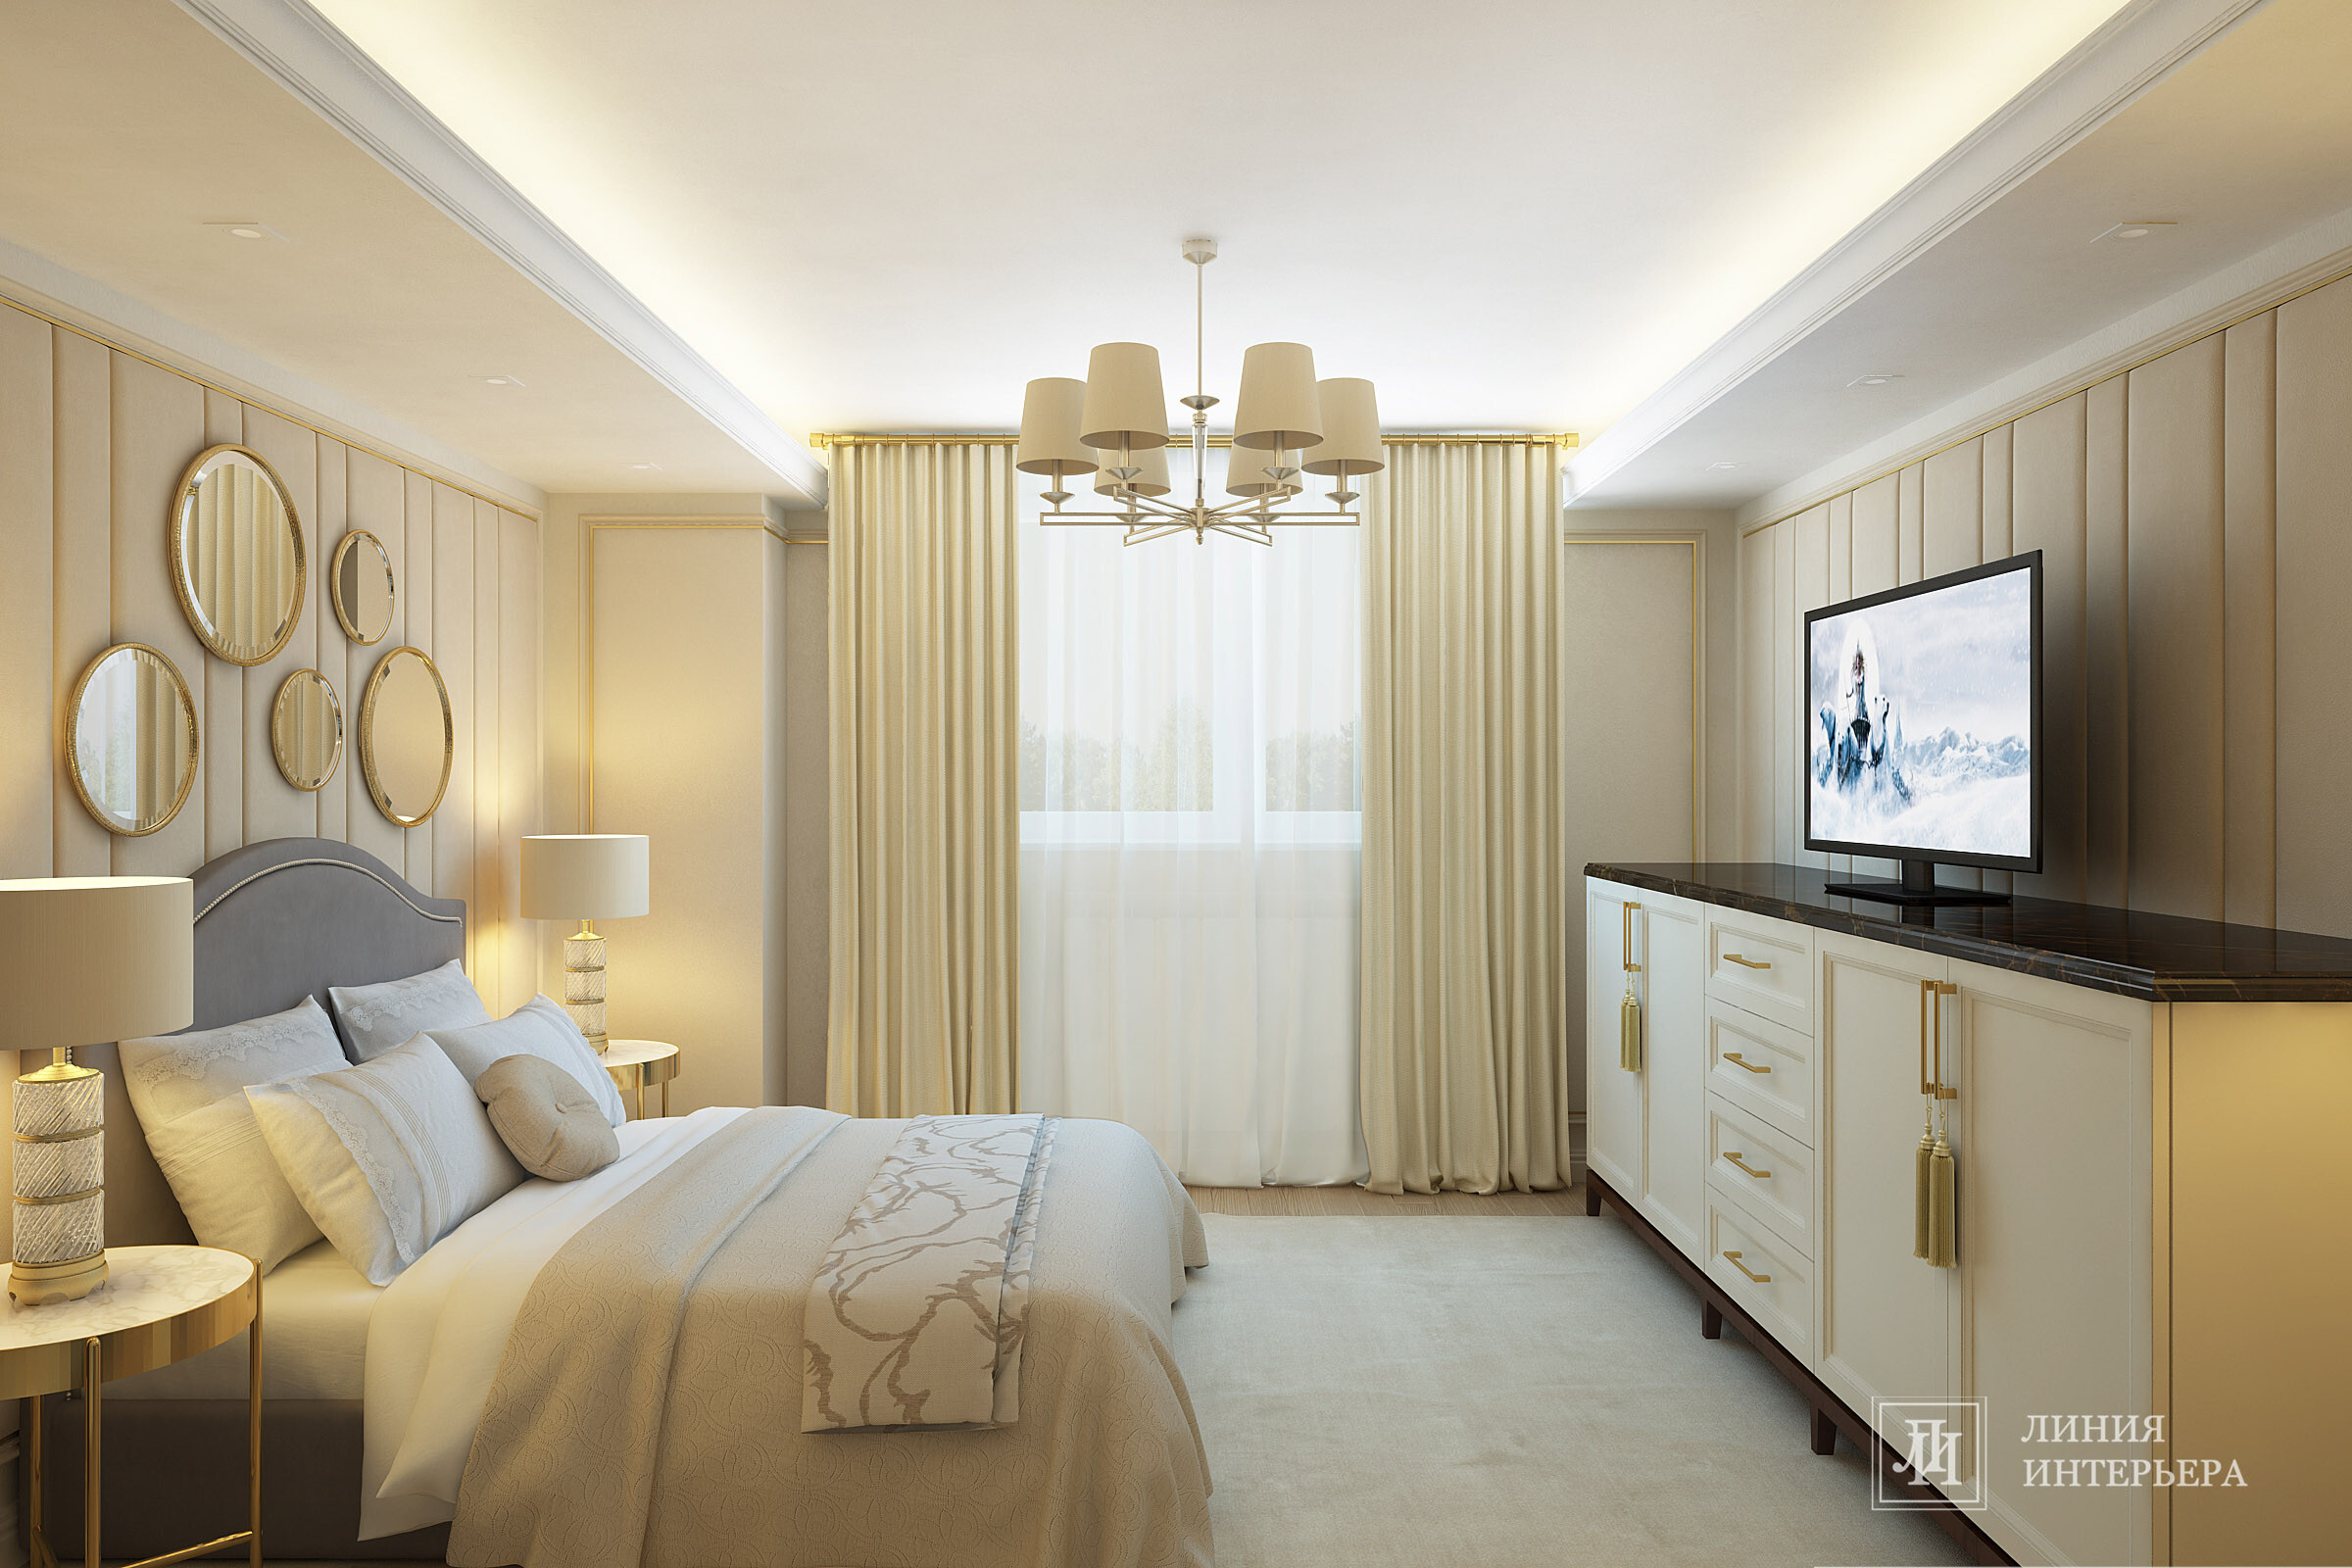 Интерьер спальни cветовыми линиями, подсветкой настенной, подсветкой светодиодной и светильниками над кроватью в неоклассике